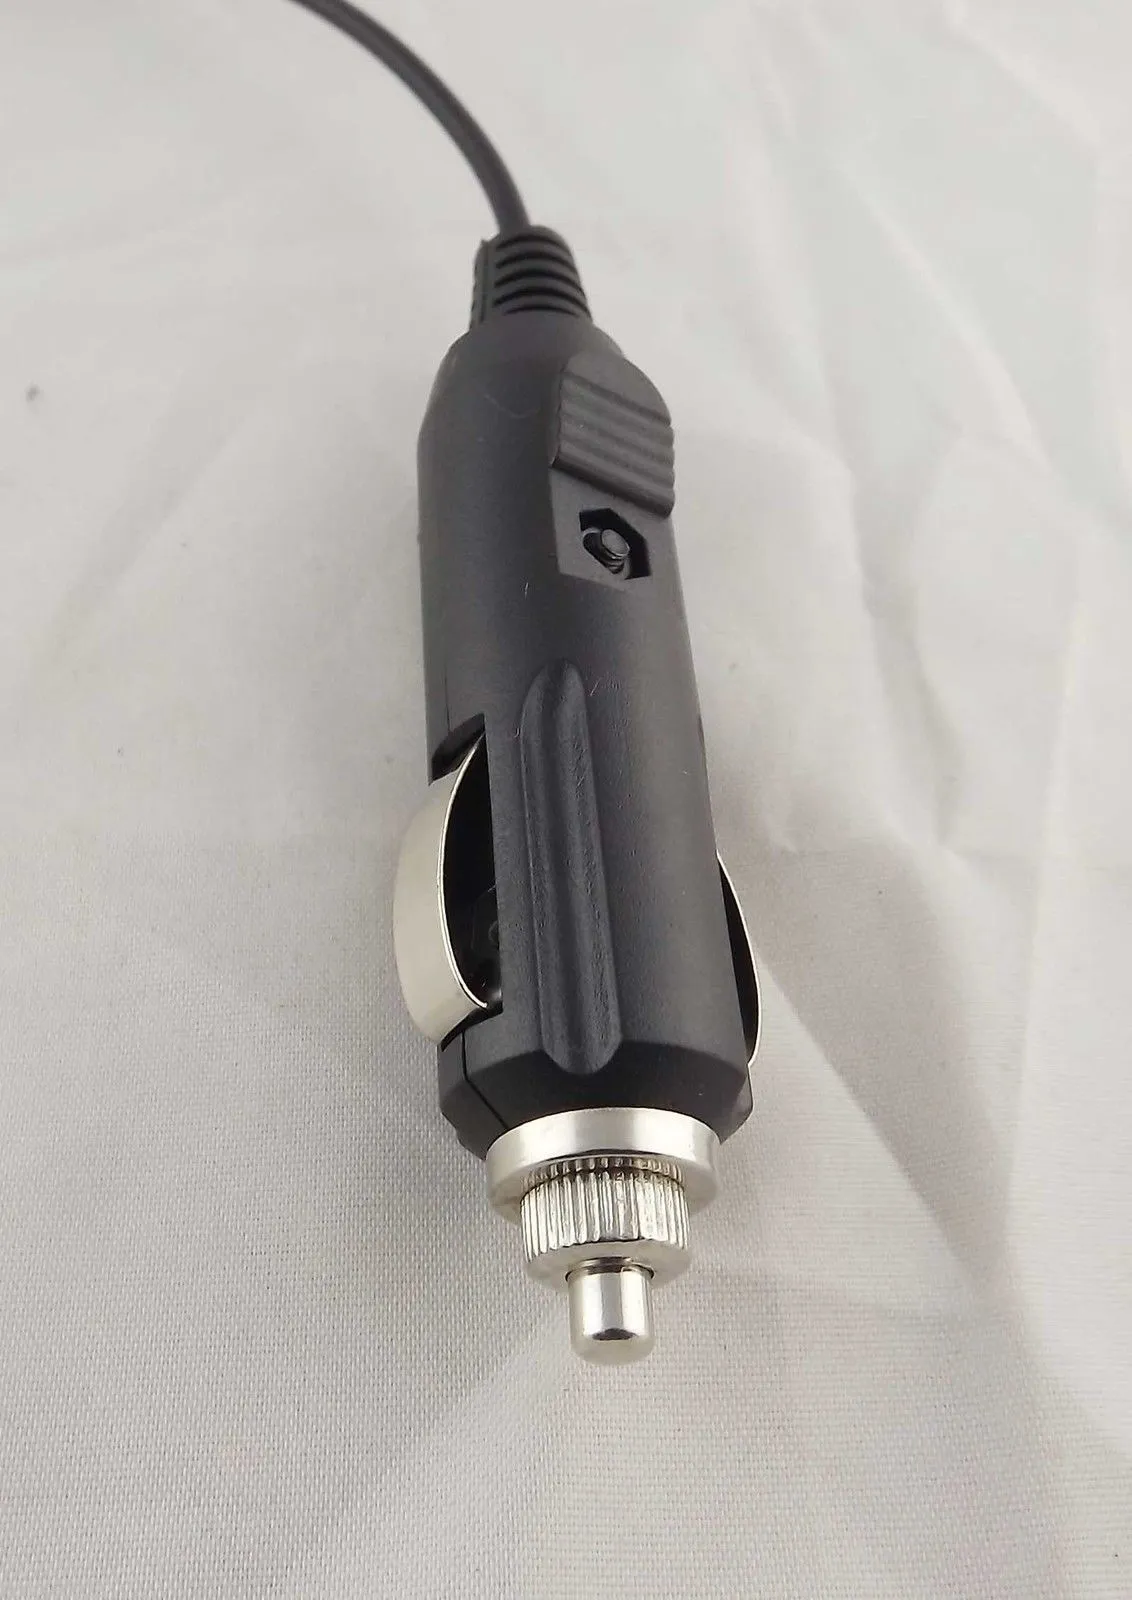 Högkvalitativ billaddare Auto Cigarette Lighter 12V 24V Car Power Supply Adapter Plug Laddare 5,5mm x 2,1mm Spring Cable